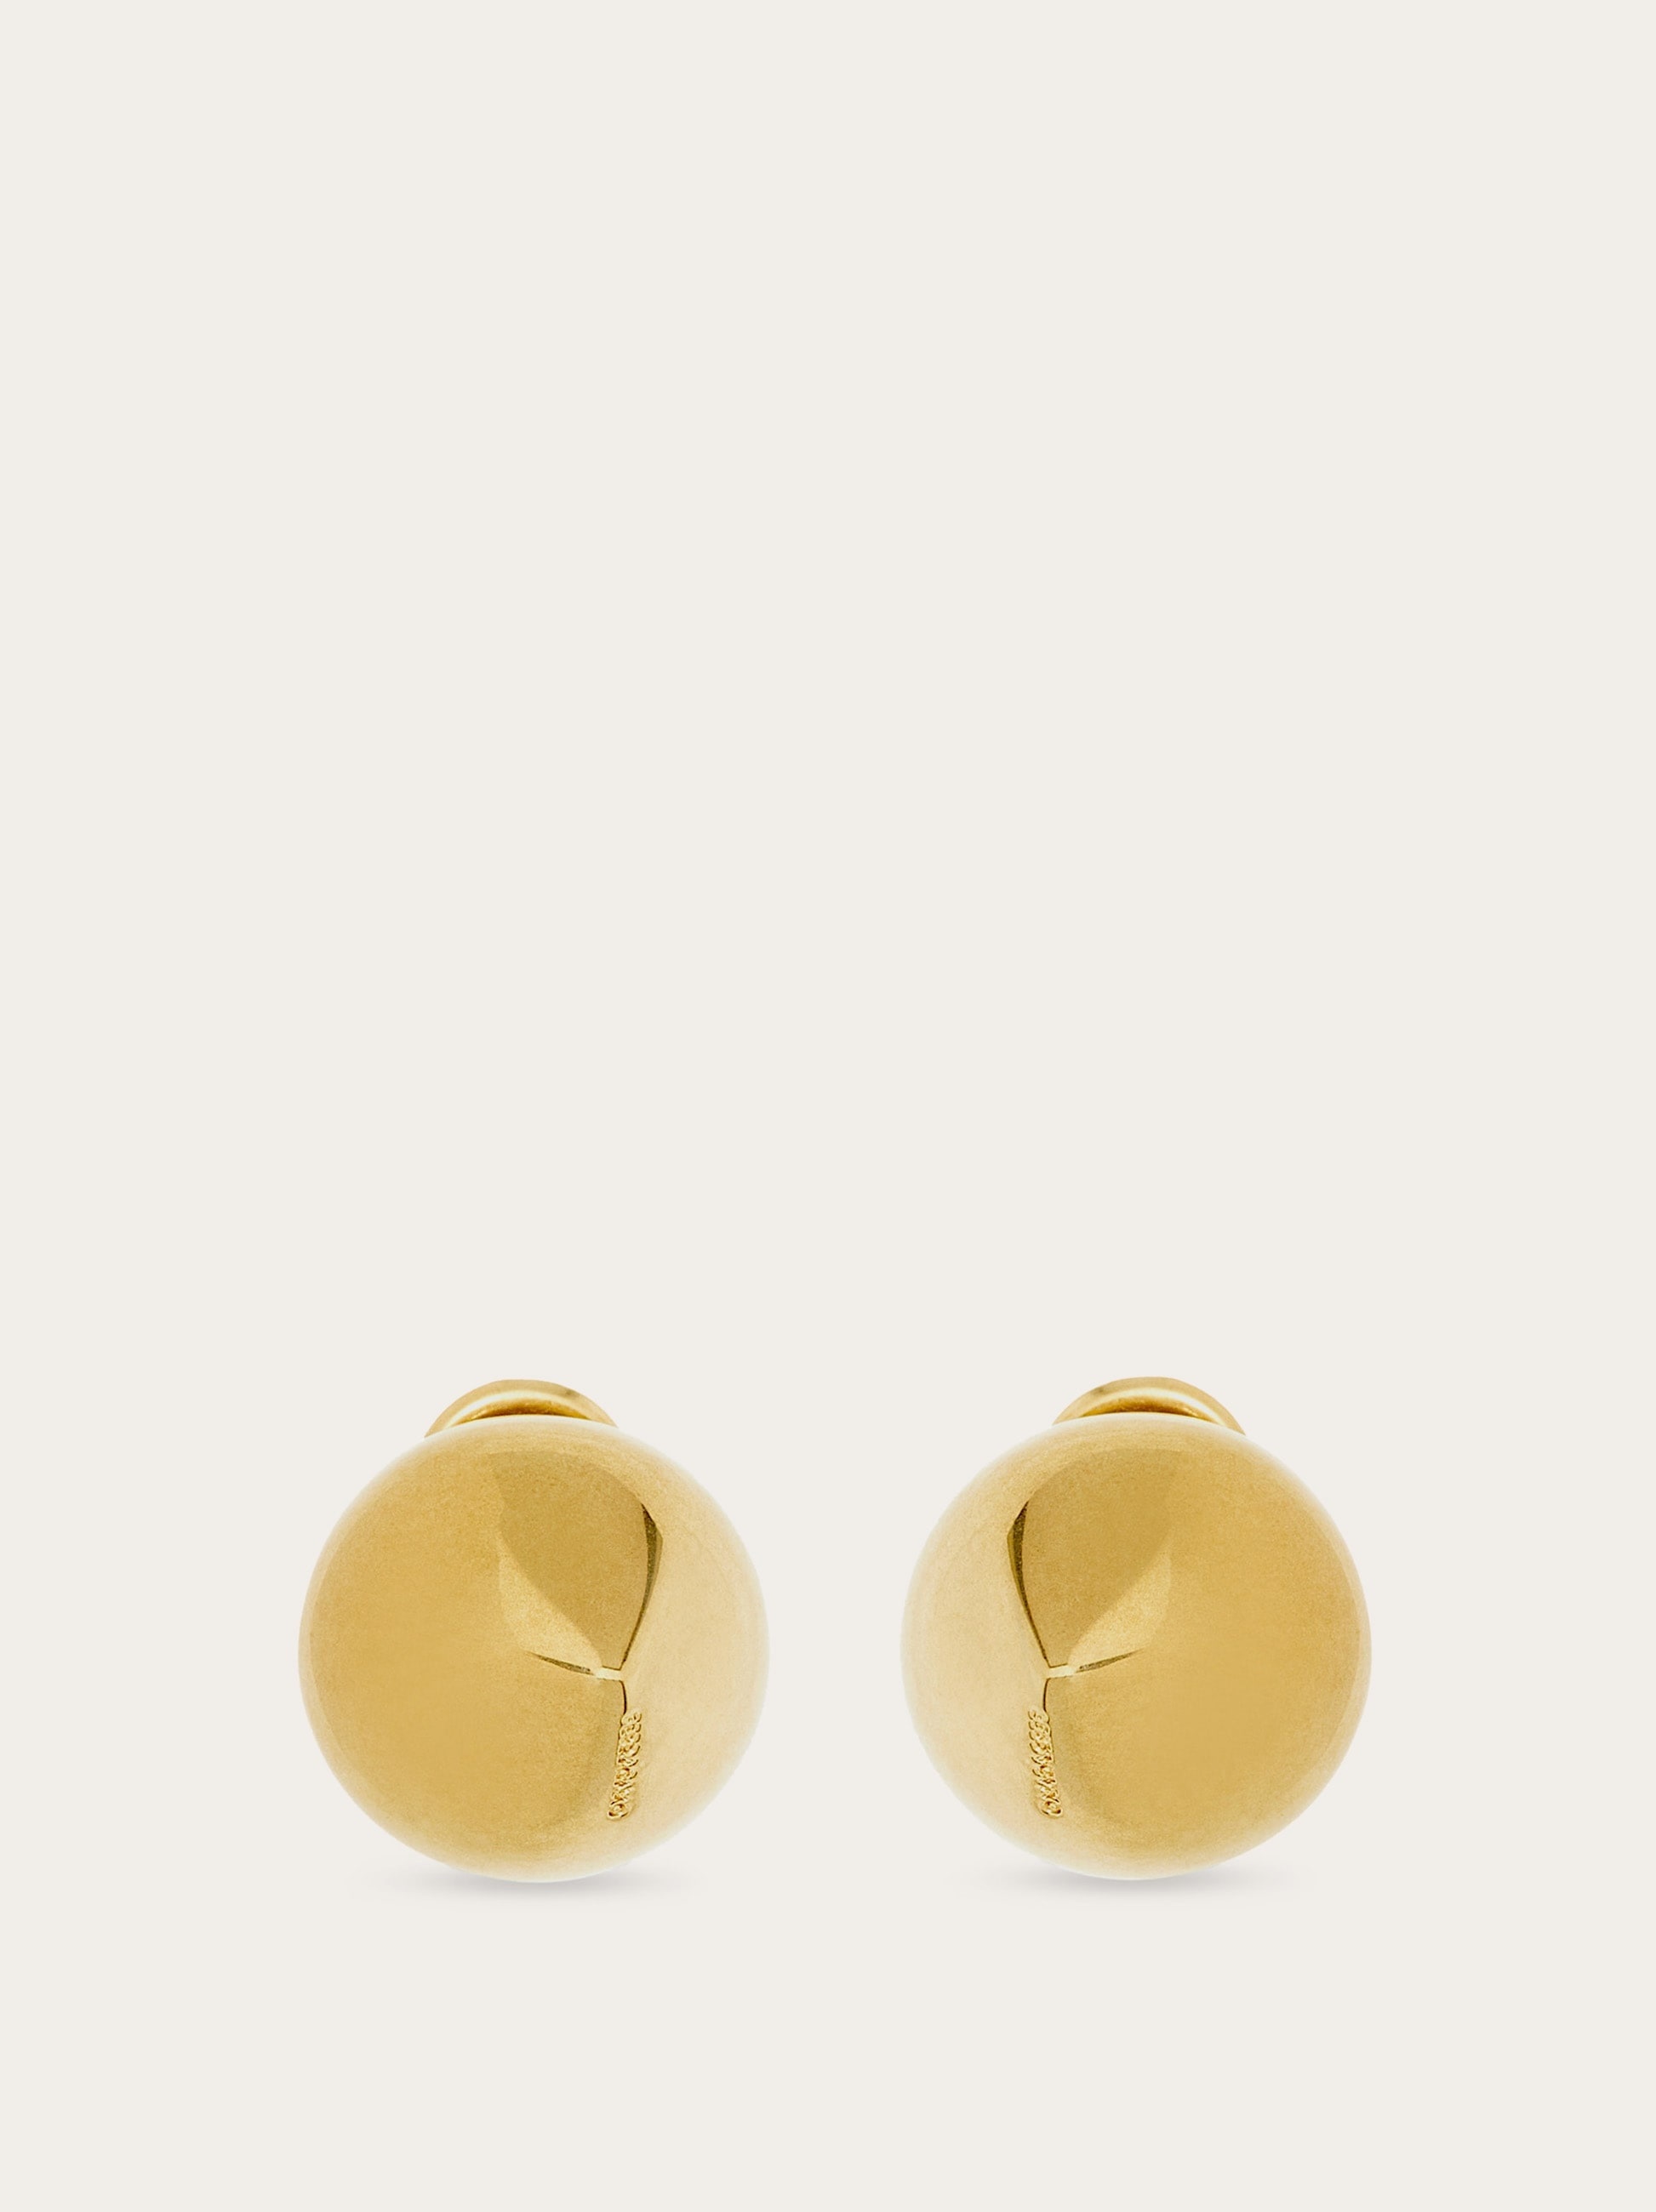 Organic shape earrings (S) - 1